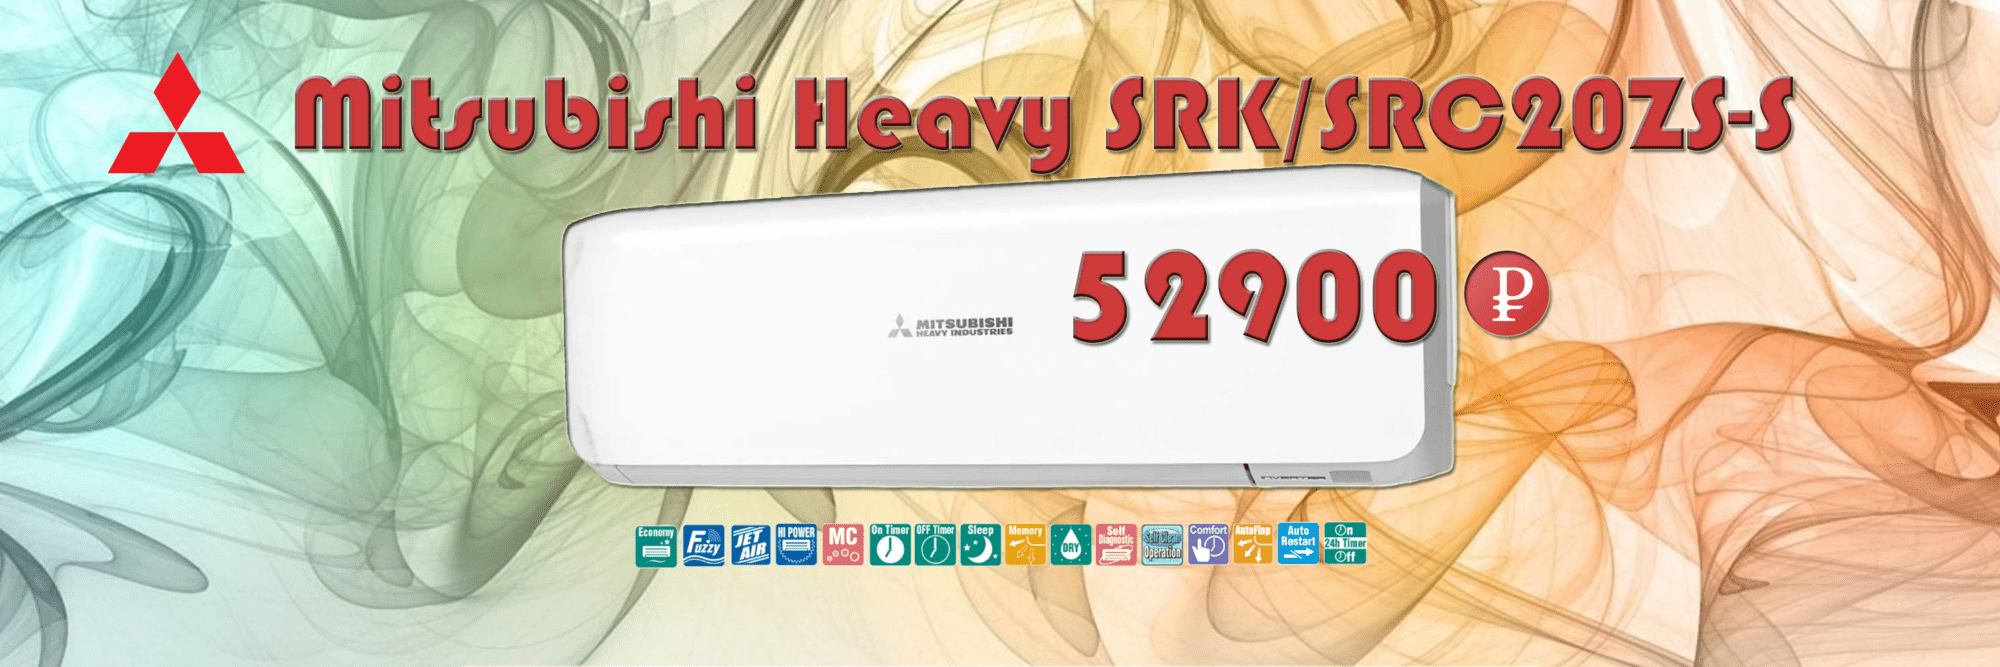 Mitsubishi Heavy SRK/SRC20ZS-S